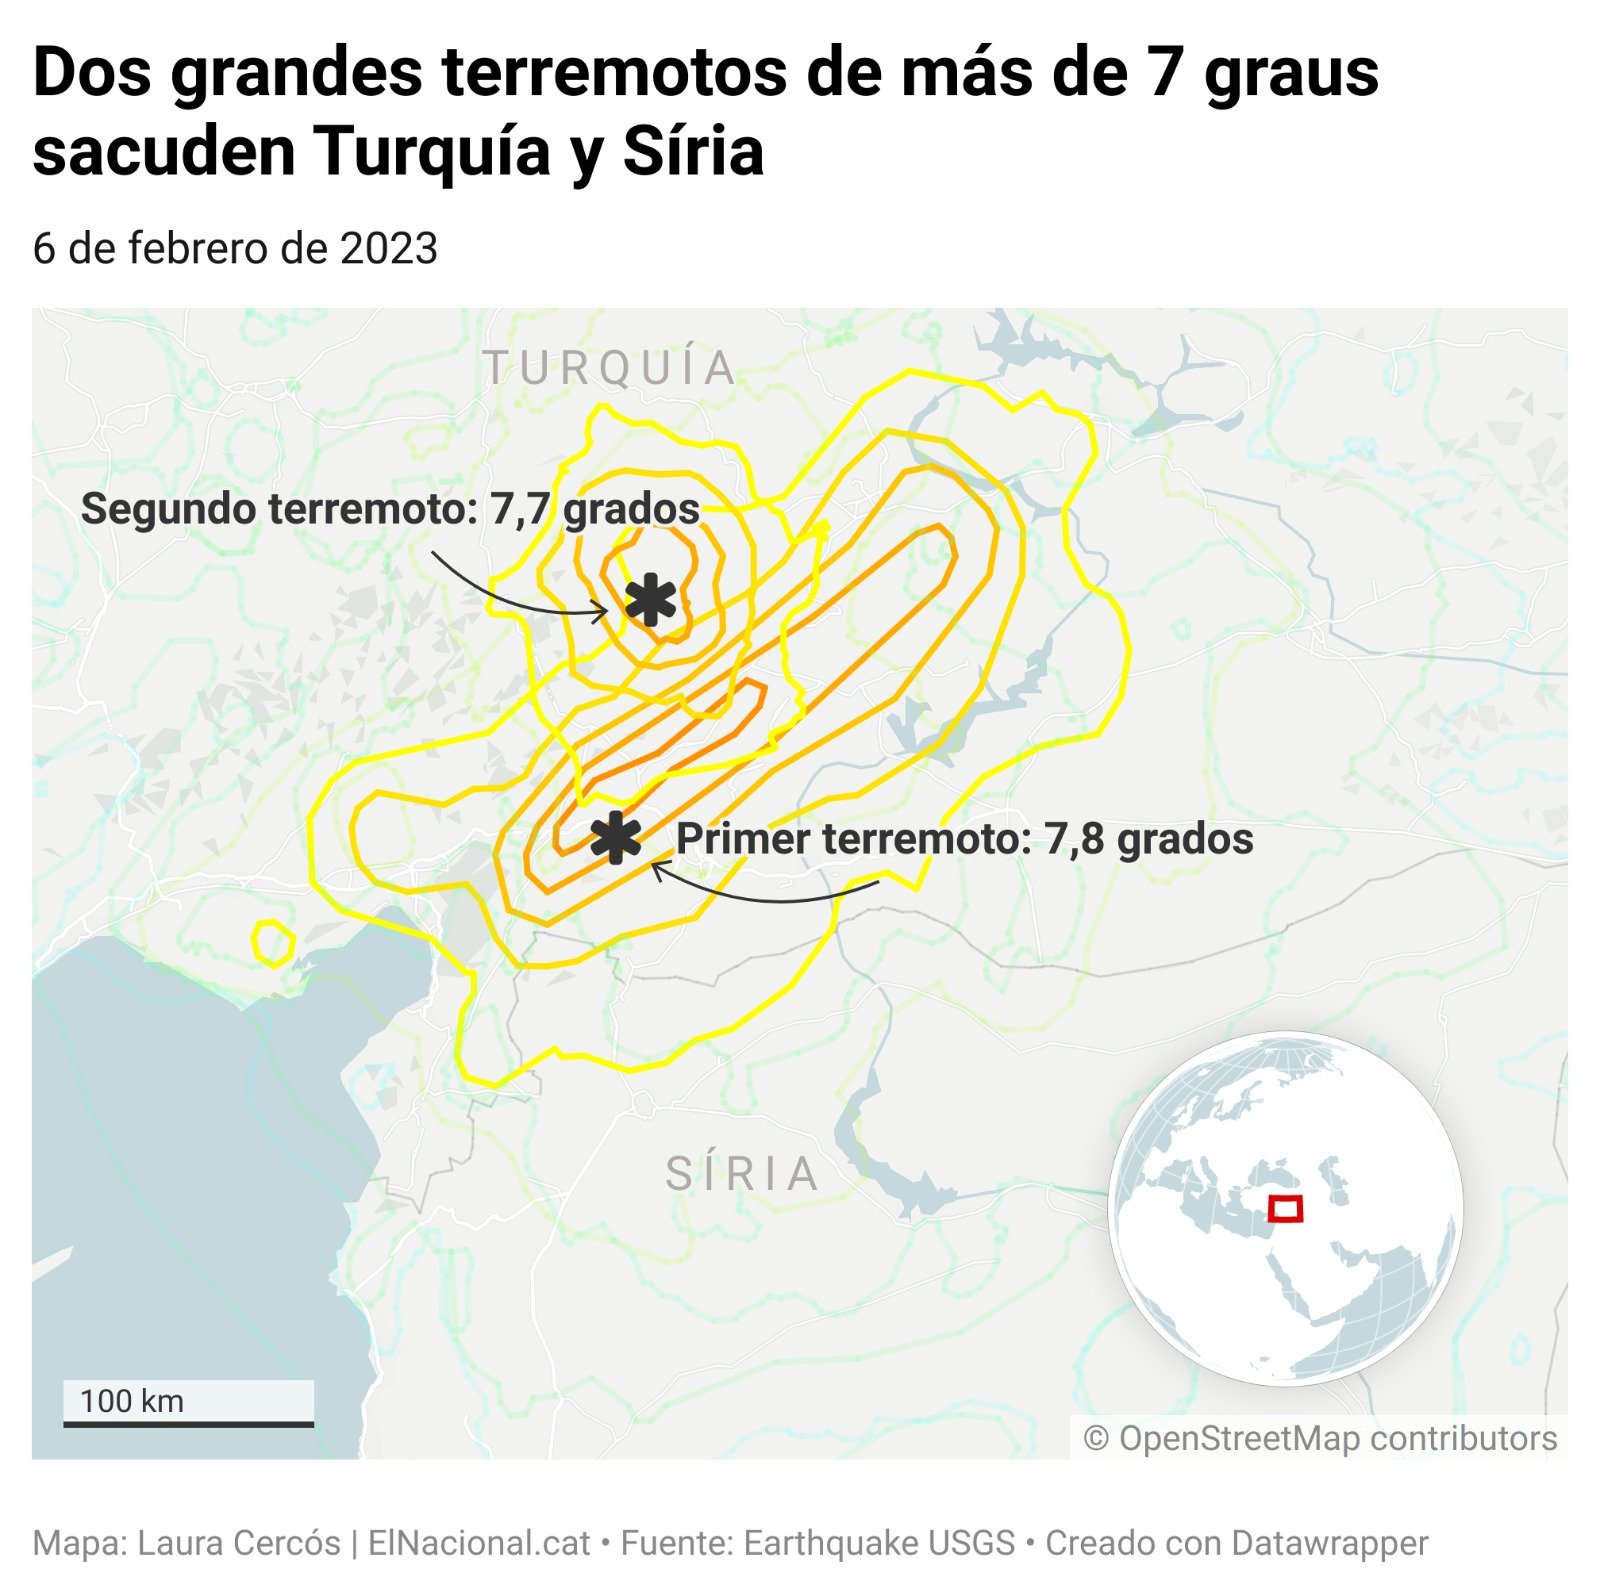 inforgrafia terremoto siria turquia castellano laura cercos